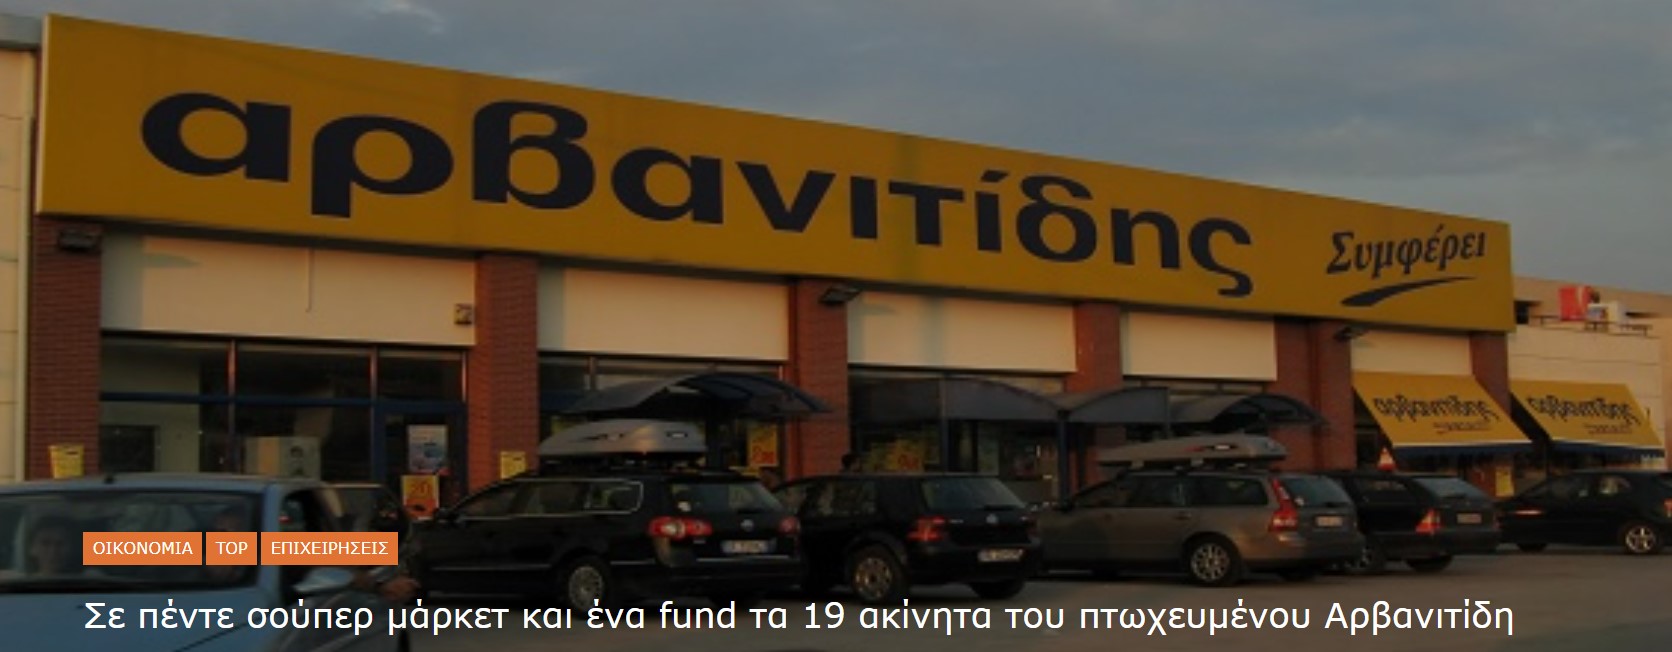 Σε πέντε σούπερ μάρκετ και ένα fund τα 19 ακίνητα του πτωχευμένου Αρβανιτίδη